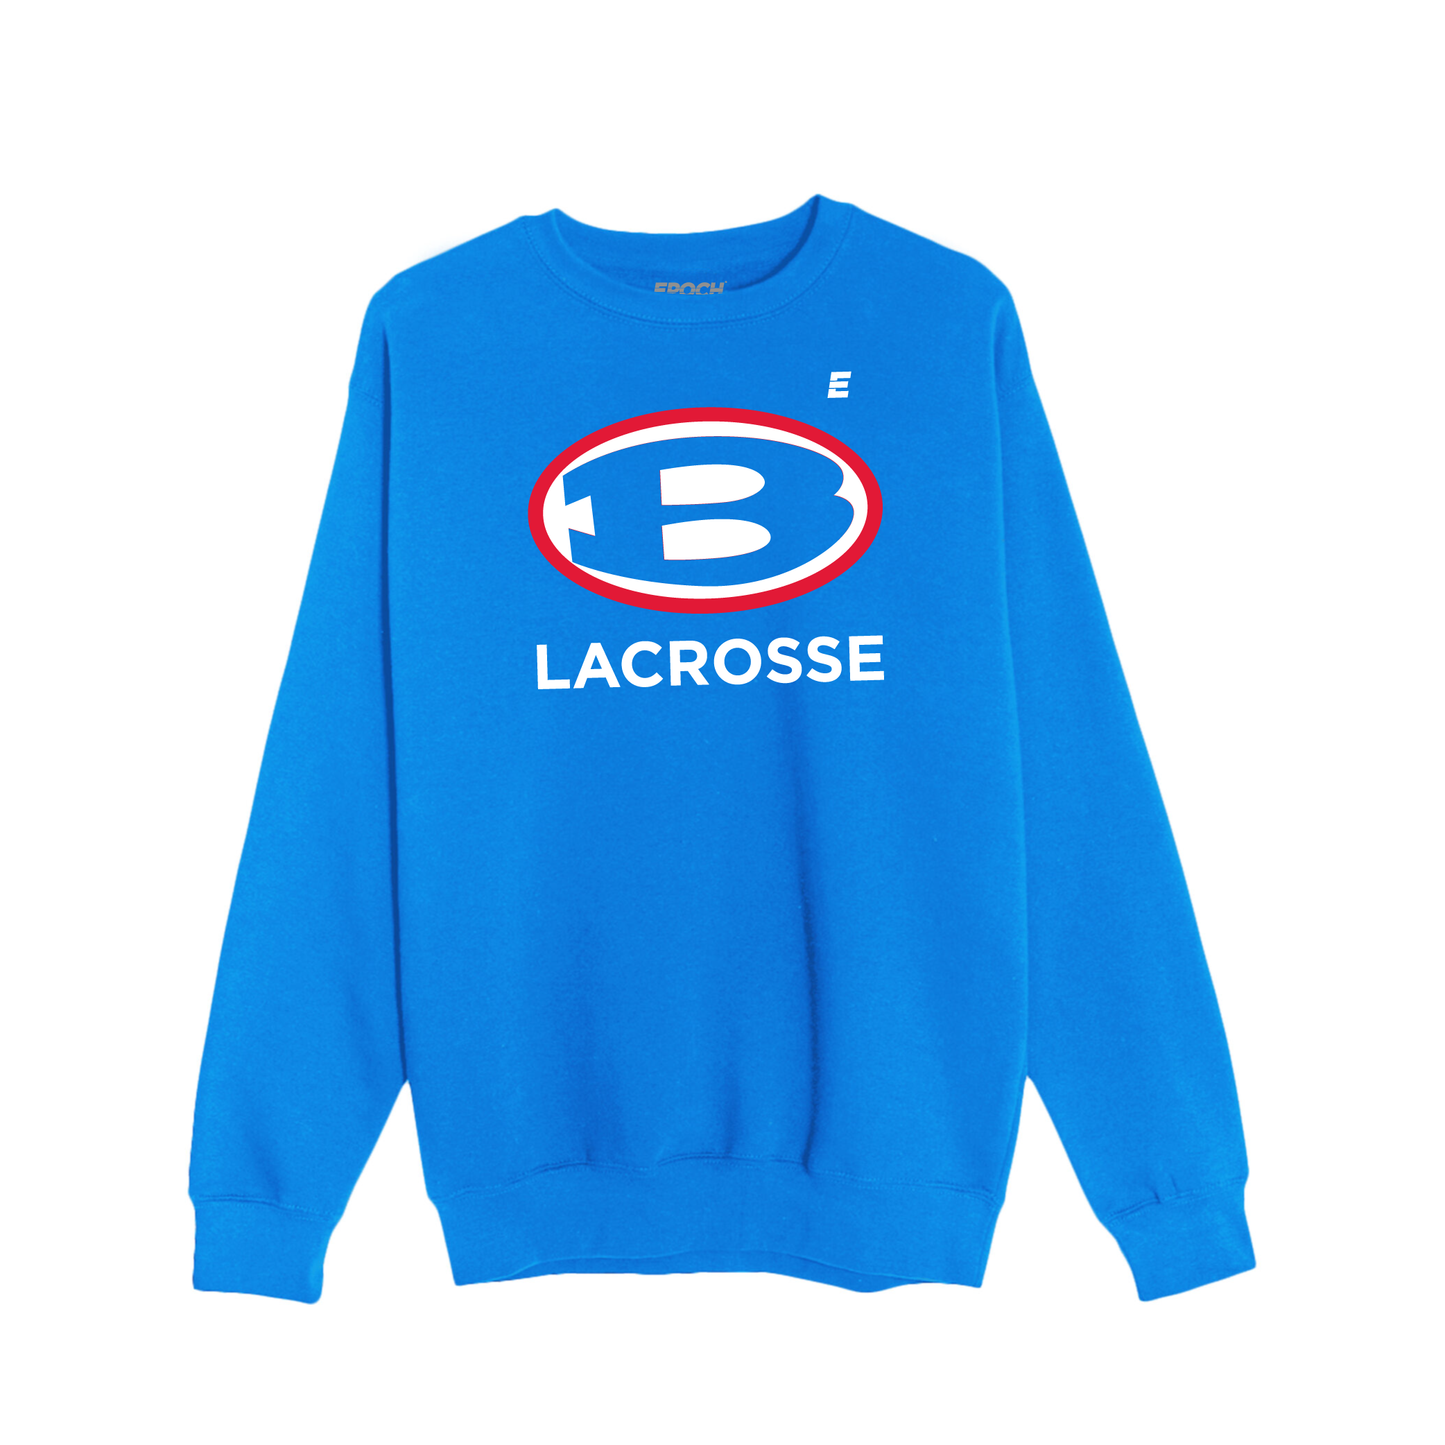 Bellport Lacrosse - Unisex Crewneck Sweatshirt